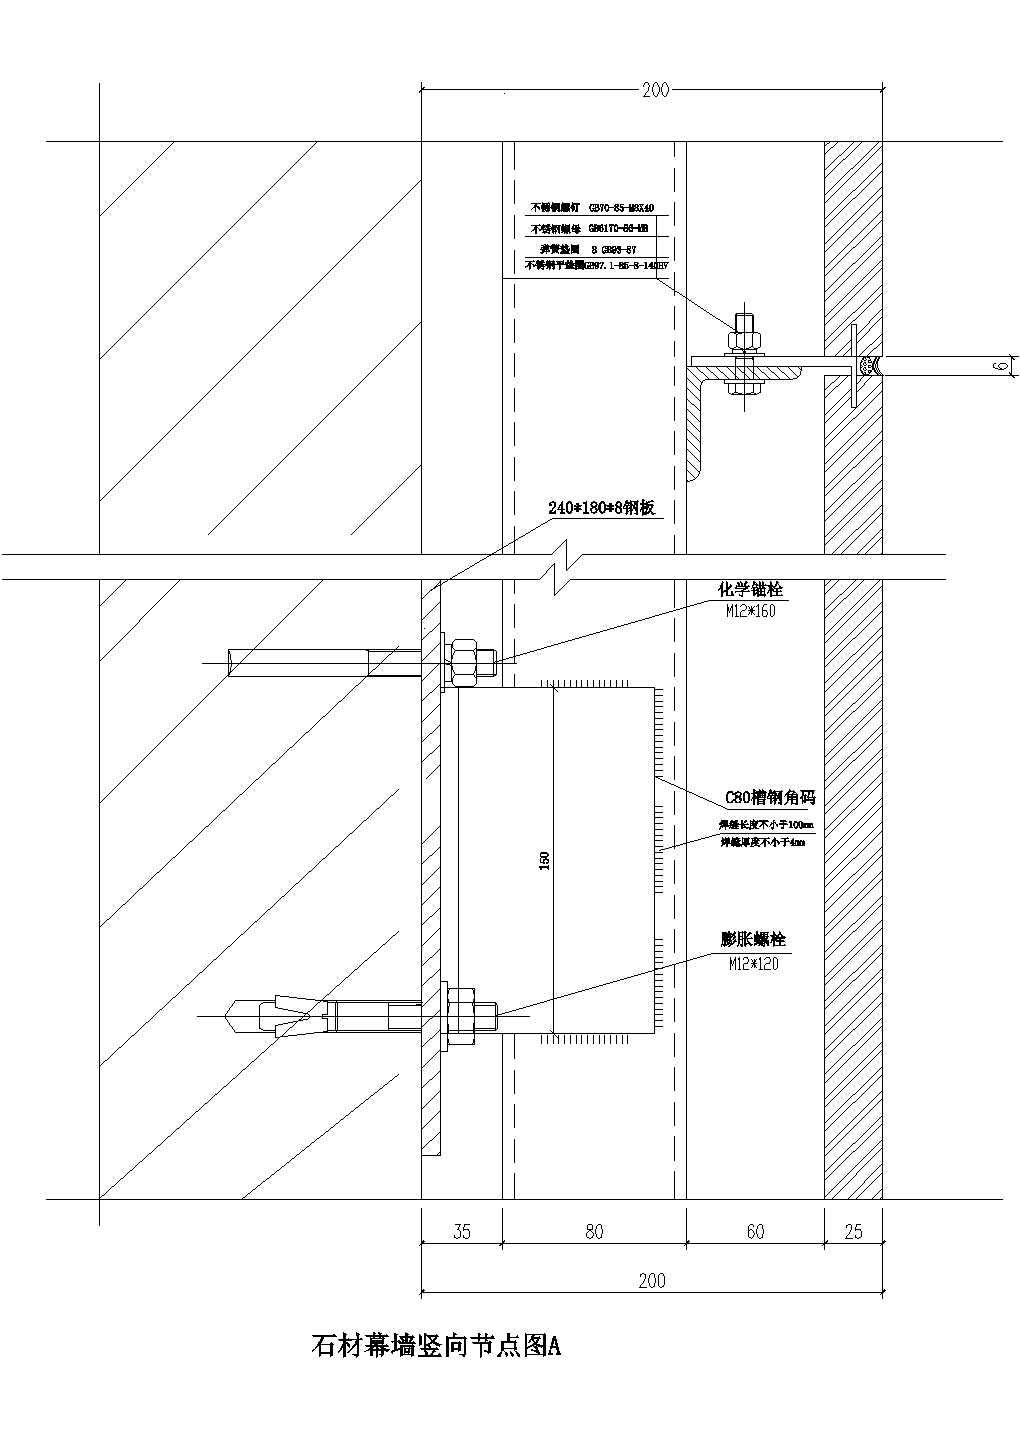 石材幕墙竖向节点图CAD施工图设计